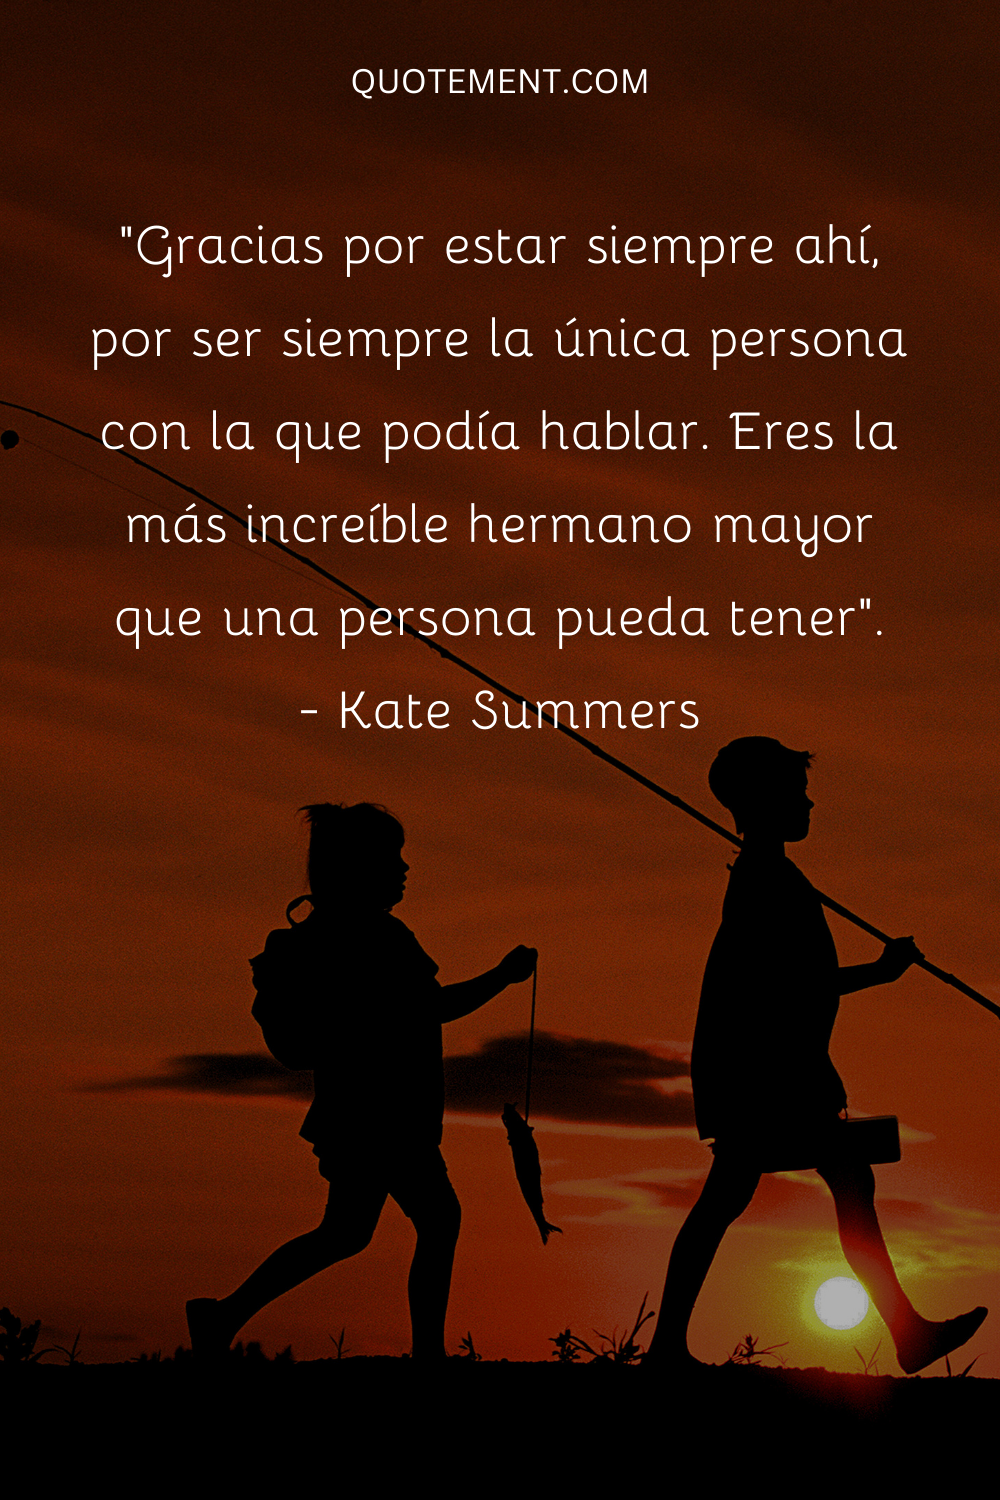 "Gracias por estar siempre ahí, por ser siempre la única persona con la que podía hablar. Eres el hermano mayor más increíble que una persona puede tener". - Kate Summers